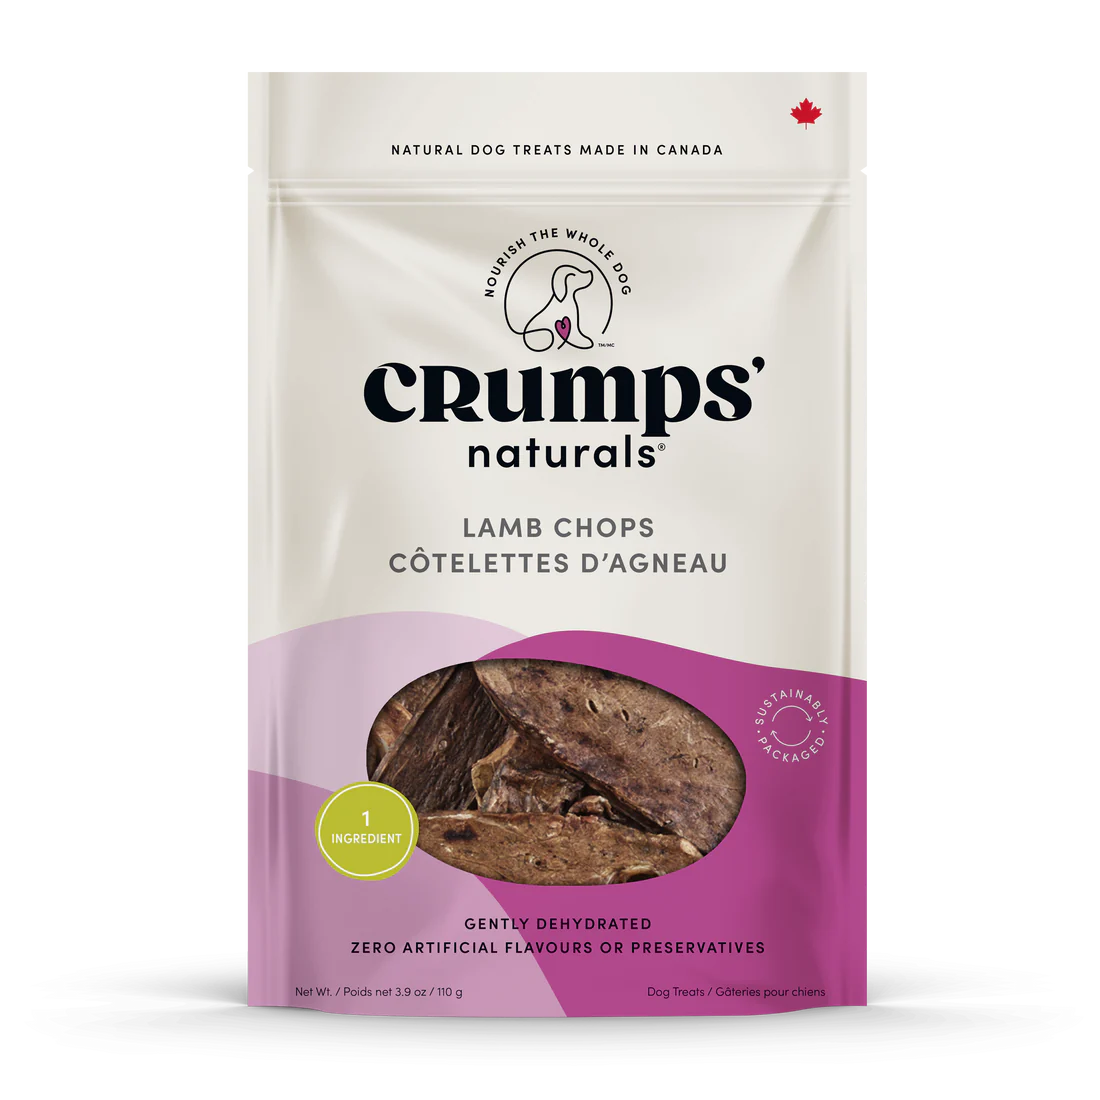 Crumps' Naturals Treats - Lamb Chops - Woofur Natural Pet Products